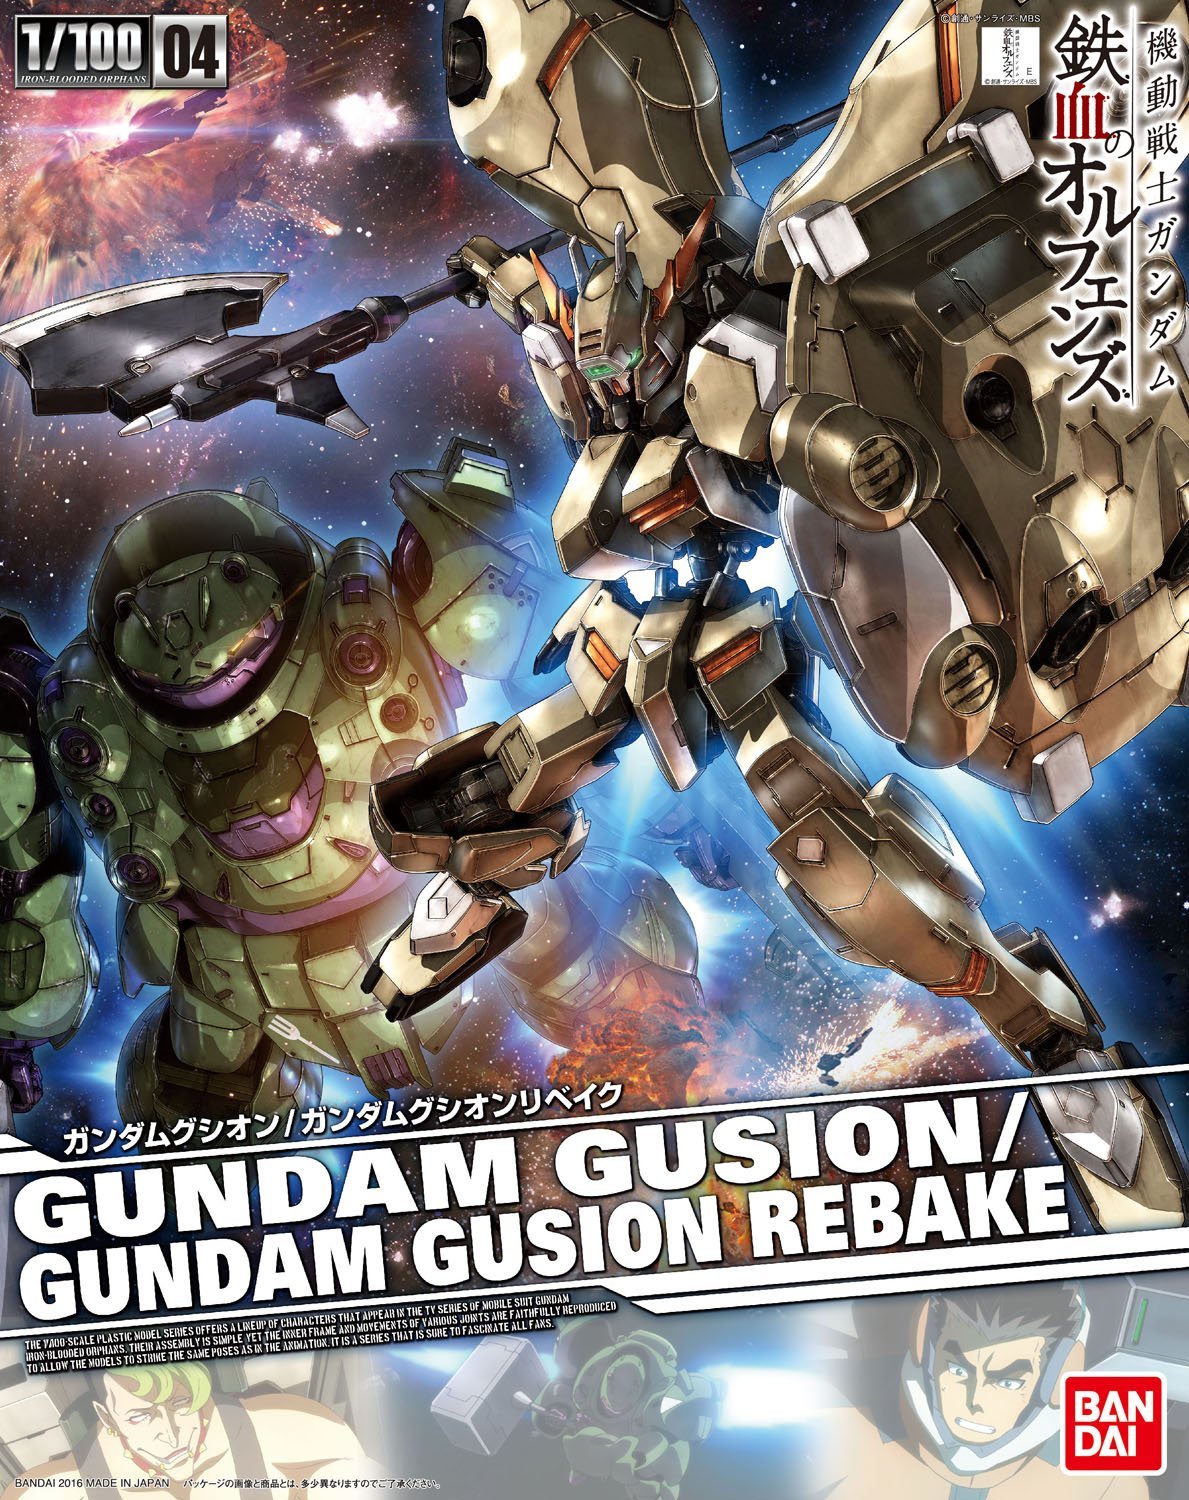 04 Gundam Gusion / Gundam Gusion Rebake 1/100